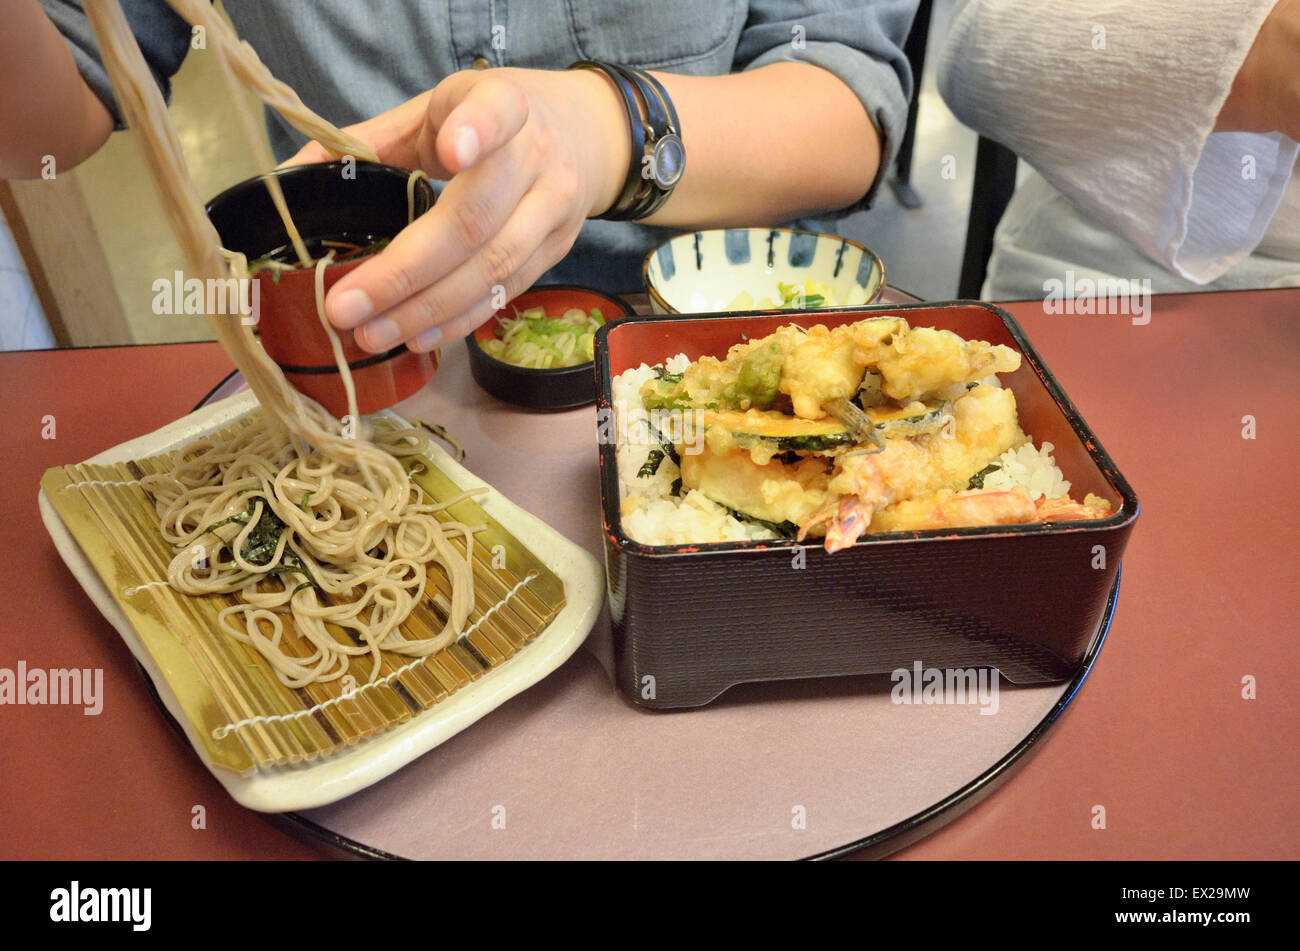 Eating soba and tempura at a Japanese restaurant. Stock Photo